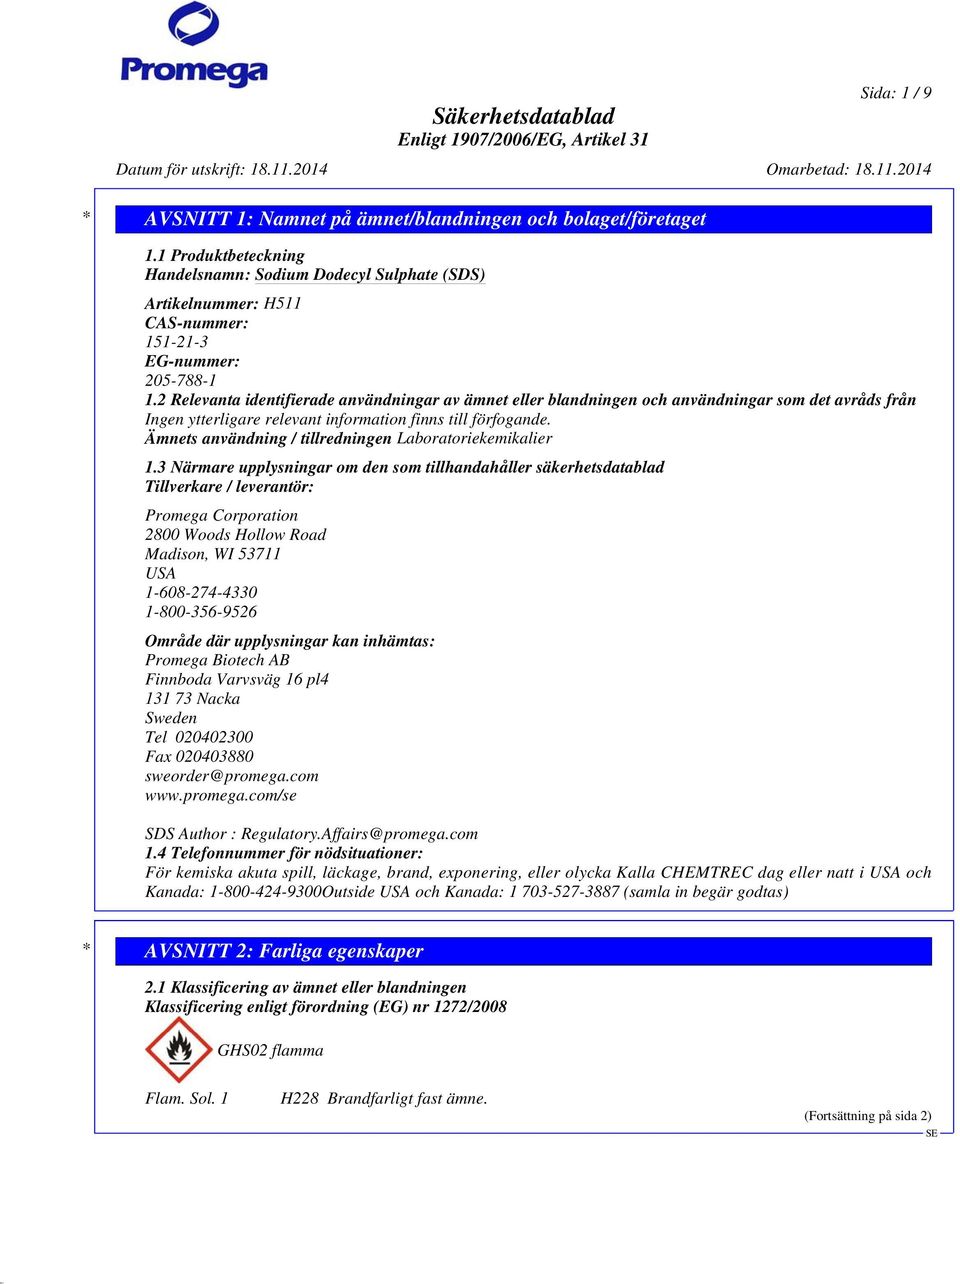 Ämnets användning / tillredningen Laboratoriekemikalier 1.